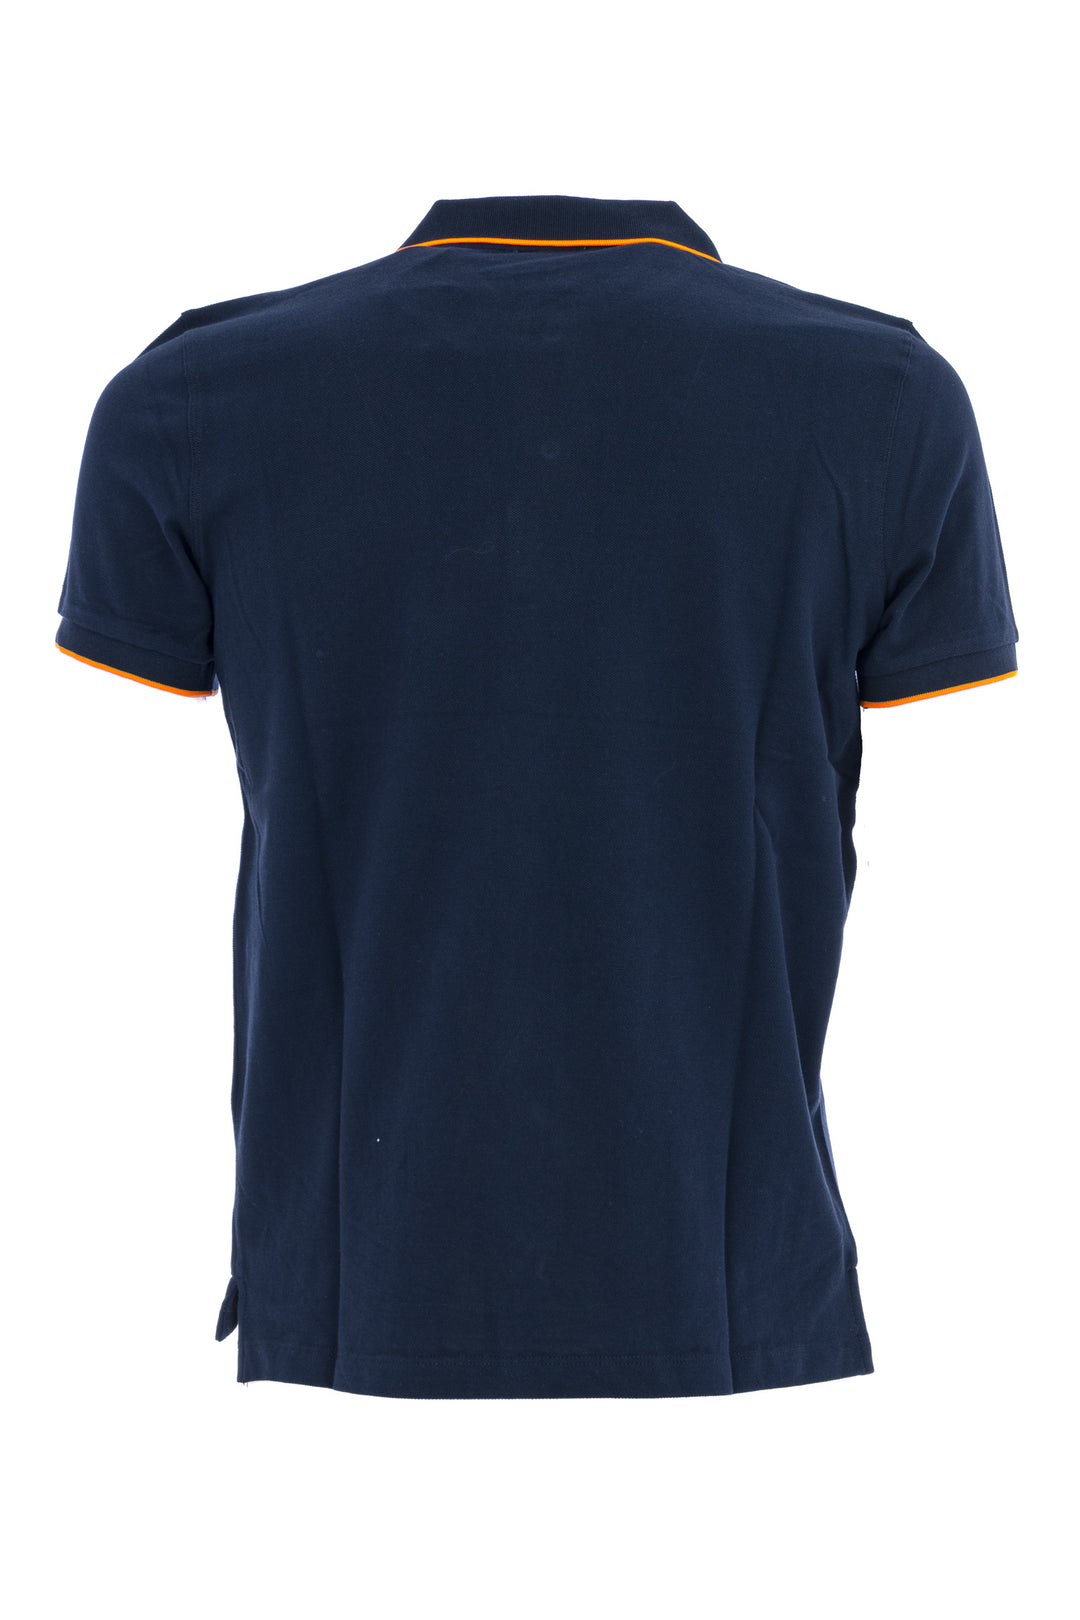 U.S. POLO ASSN. Polo in tricot di cotone con logo ricamato blu navy con contrasto arancio - Mancinelli 1954